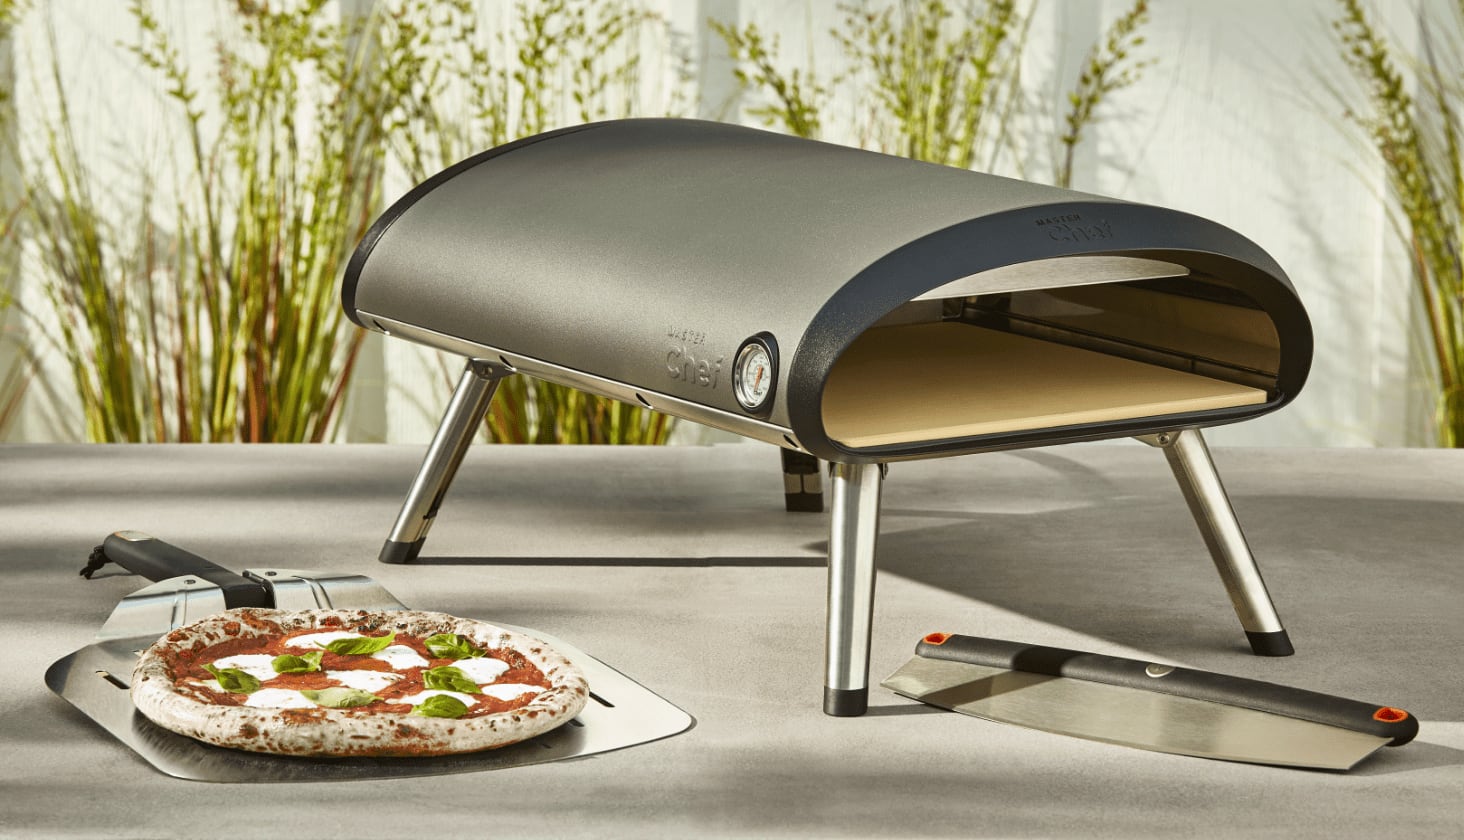 Un four à pizza au gaz MASTER Chef sur une table extérieure avec une pizza cuite. 